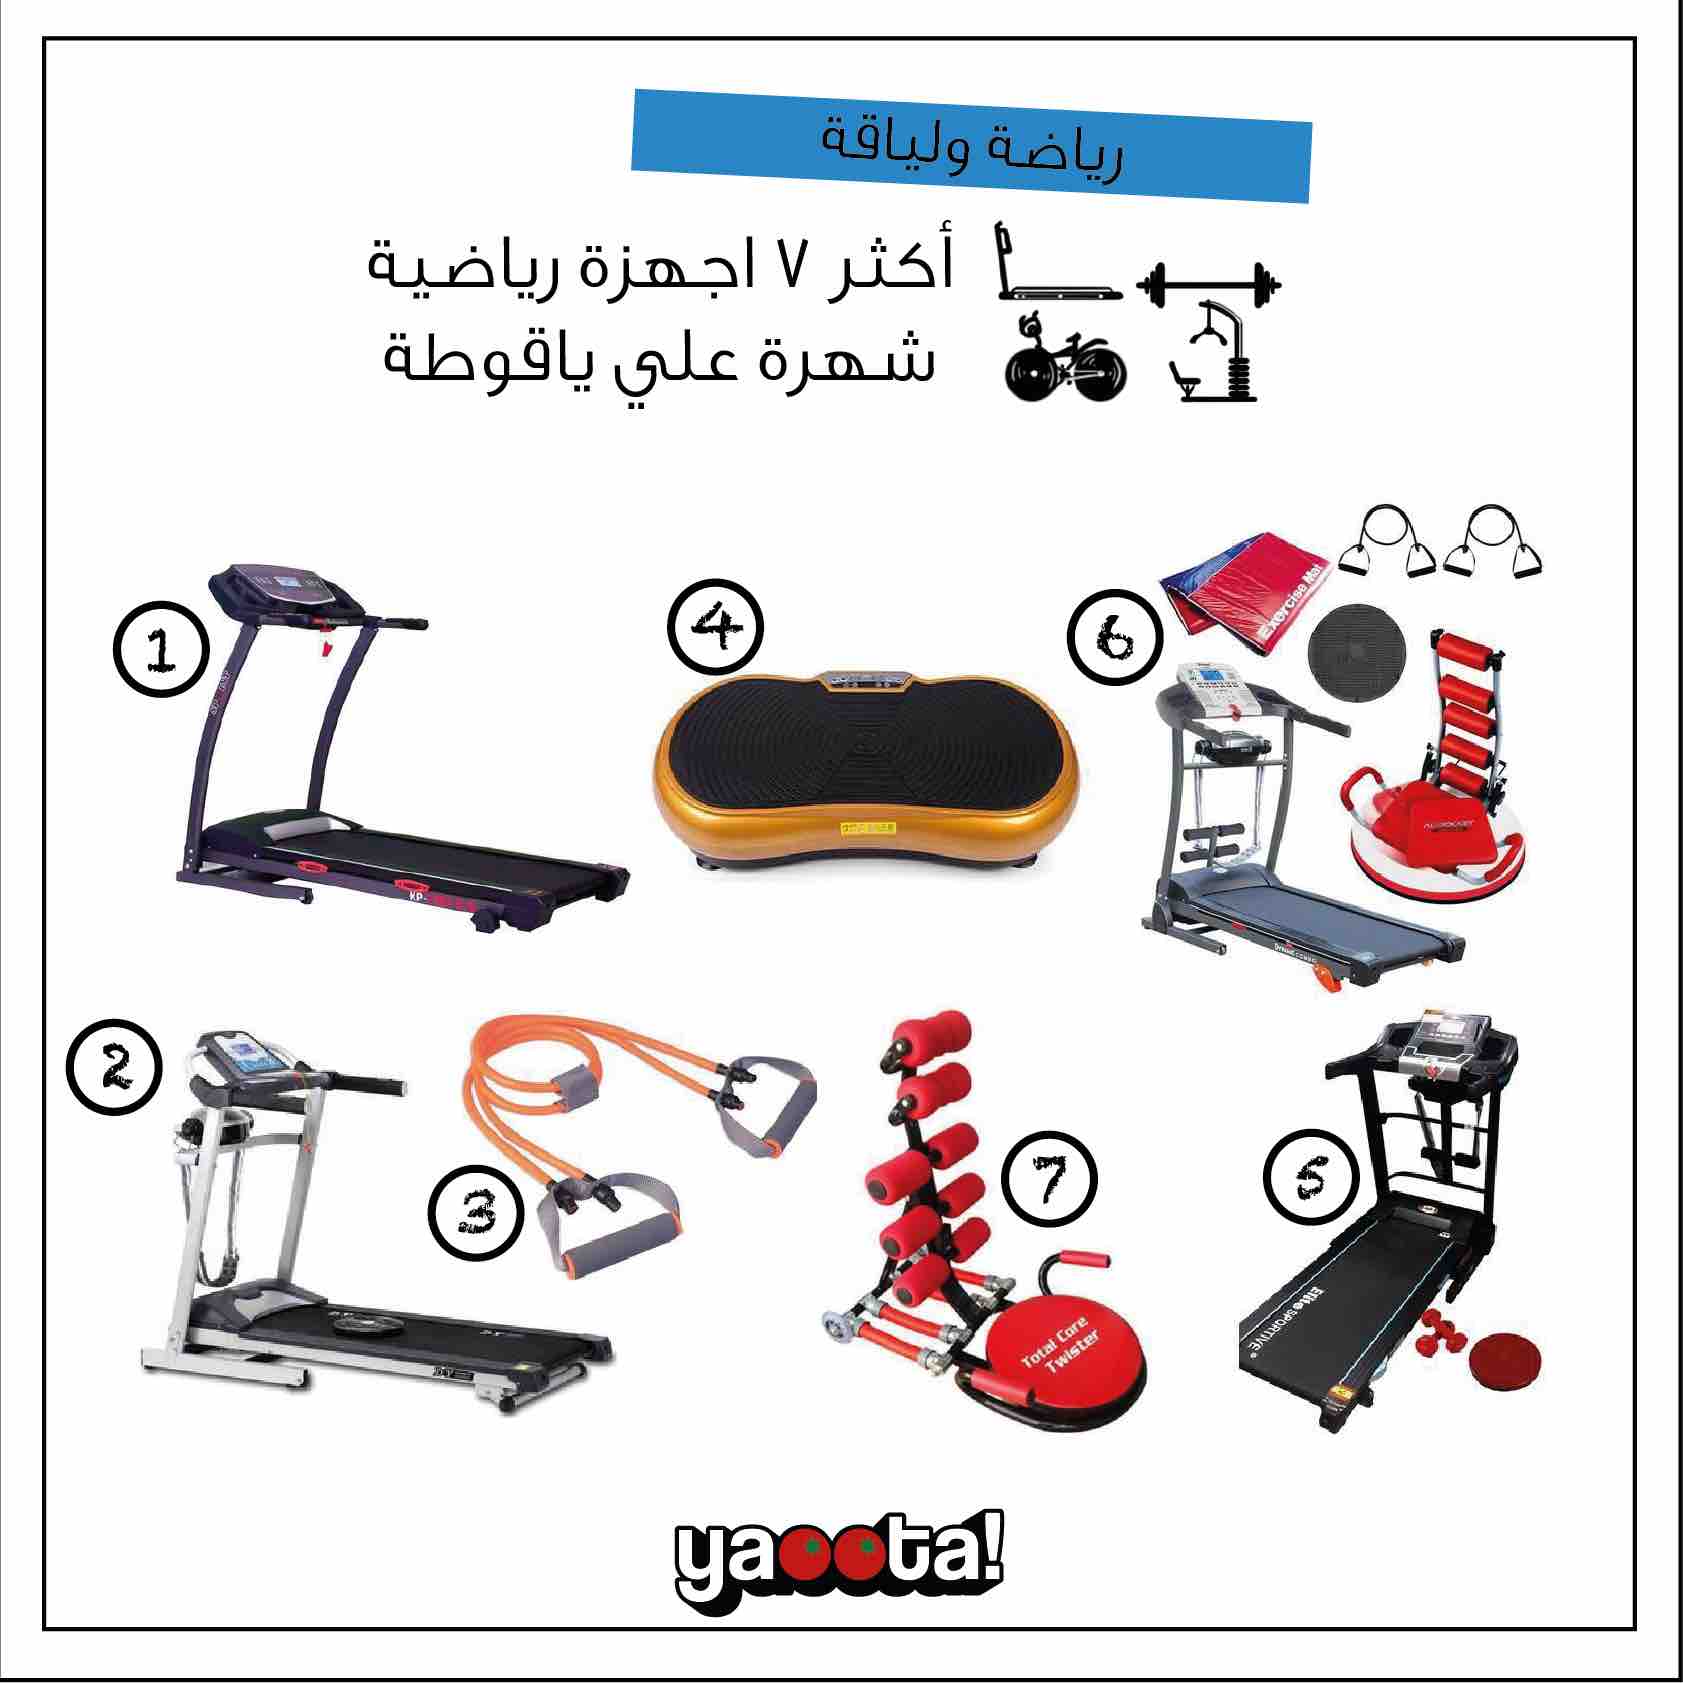 أكتر ٧ أجهزة رياضية شهرة على ياقوطة: المميزات والمواصفات وأحسن  الأسعارOnline Shopping Egypt | Yaoota! Magazine